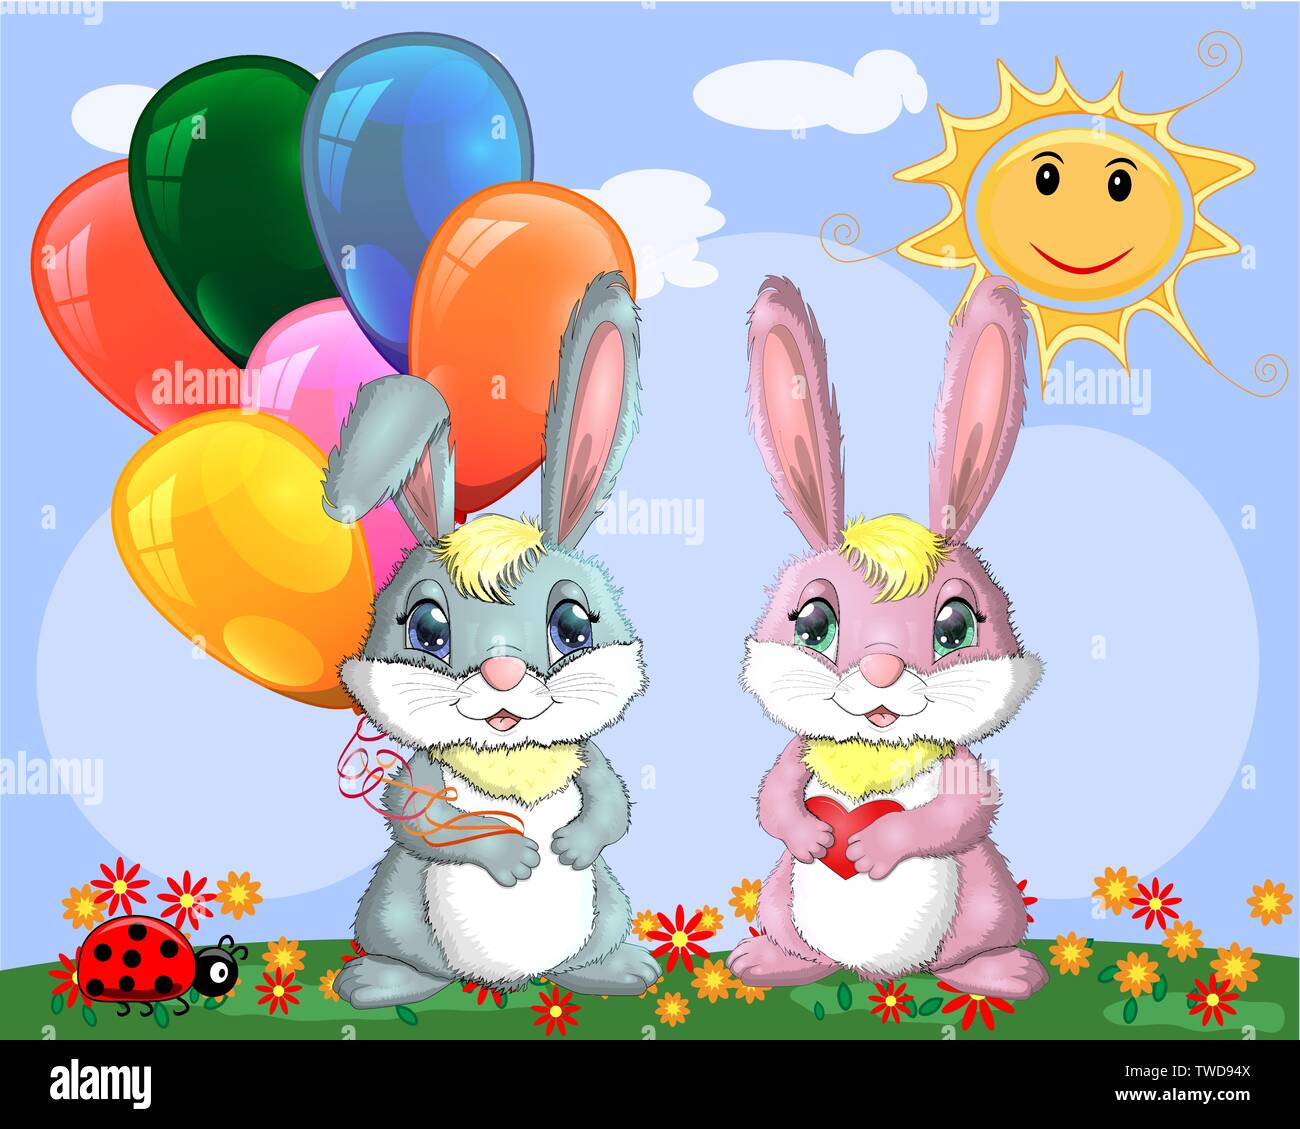 Cute cartoon Bunny mit einem Arm voller Bälle und ein Häschen Freundin in einer Wiese in der Nähe der Regenbogen. Frühling, Liebe, Postkarte Stock Vektor